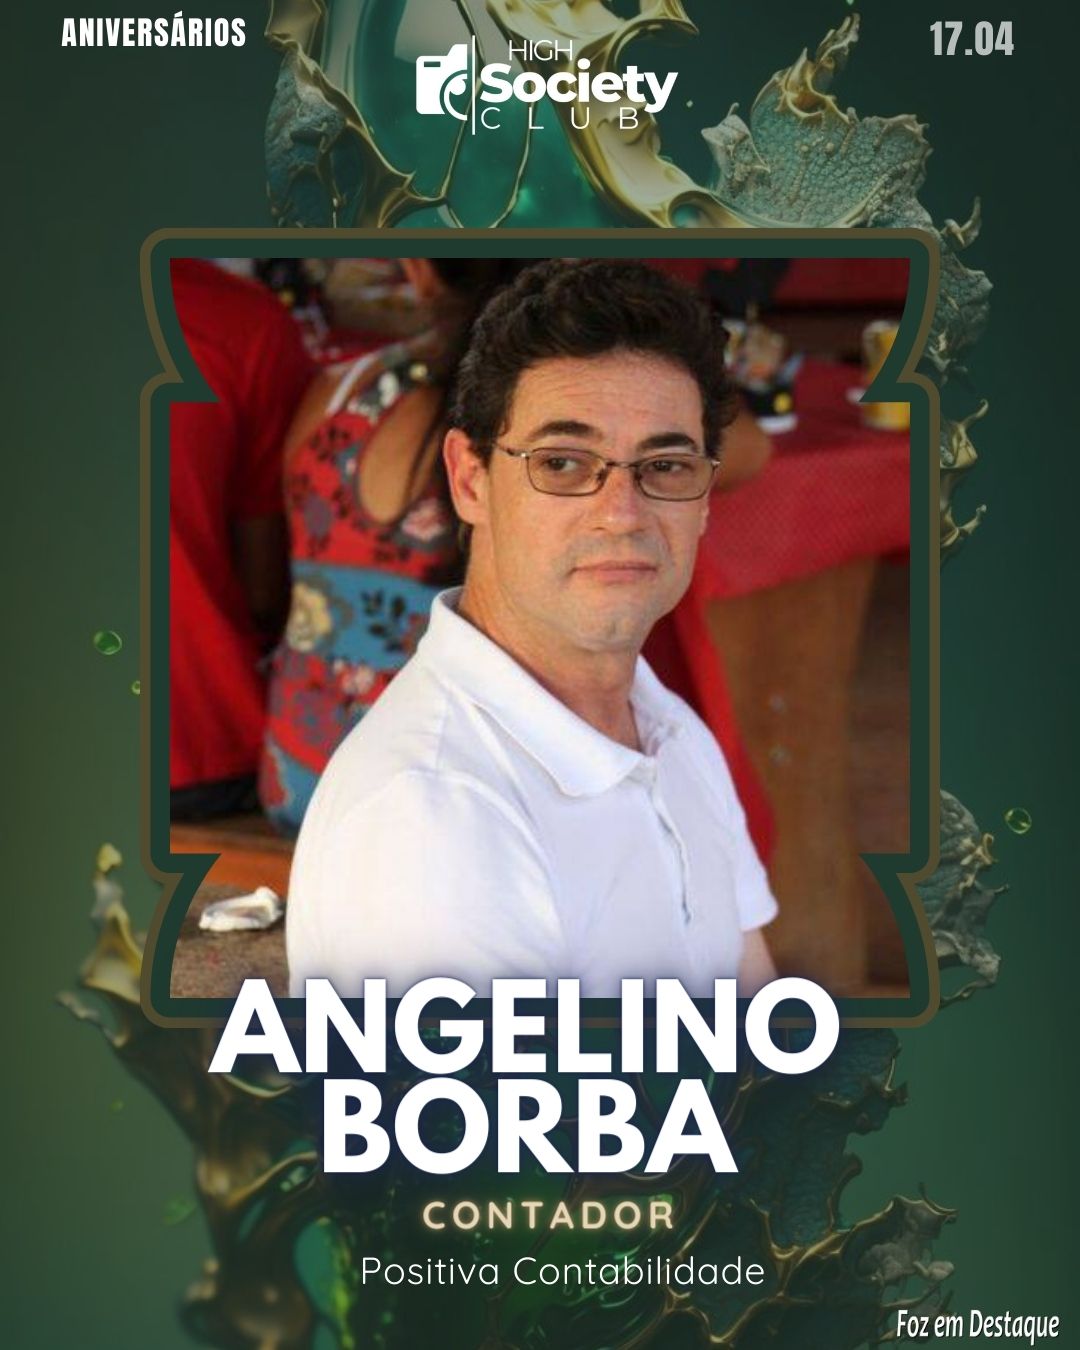 Angelino Borba - Contador - Positiva Contabilidade 
Aniversários 17 de Abril 2024  High Society Club Foz em Destaque